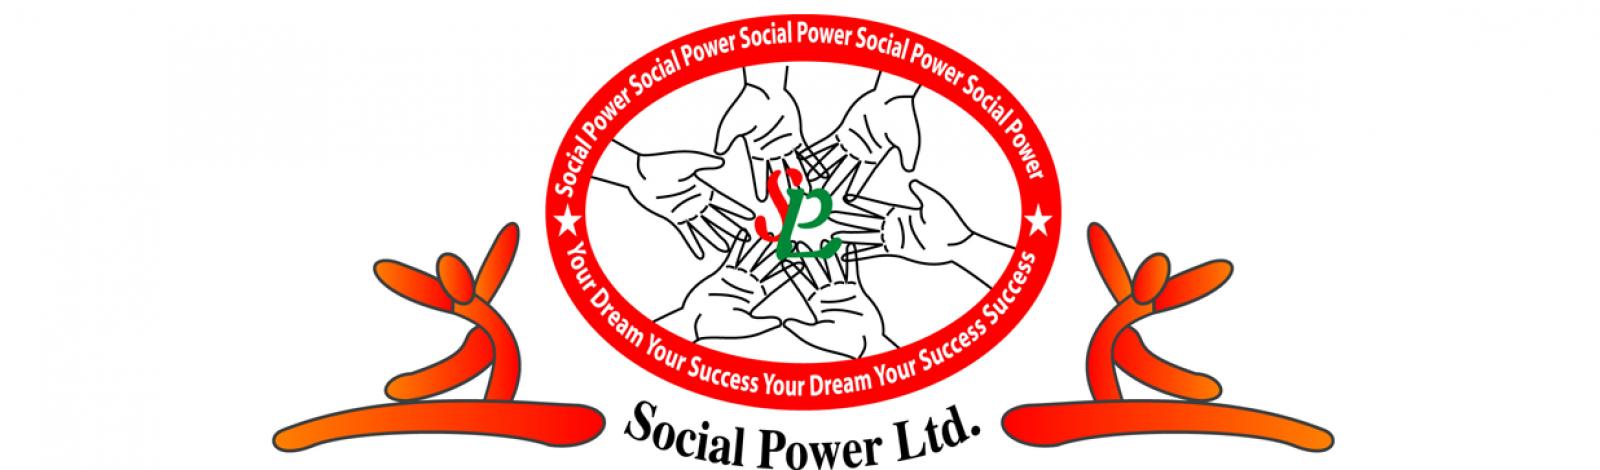 social power ltd banner